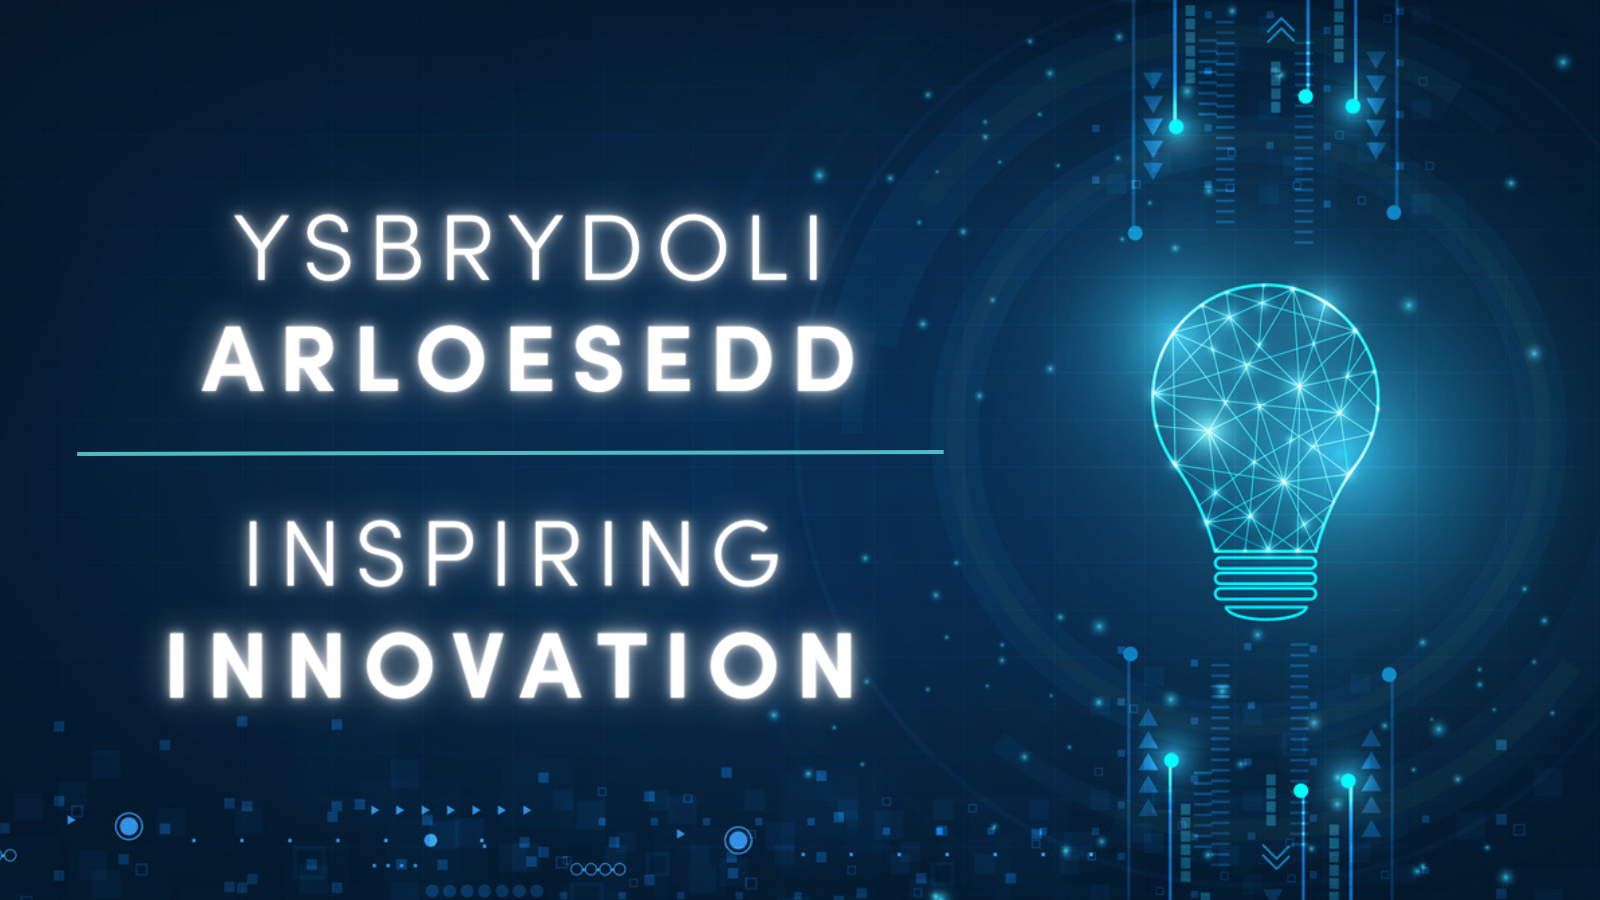 Inspiring Innovation/Ysbrydoli Arloesedd